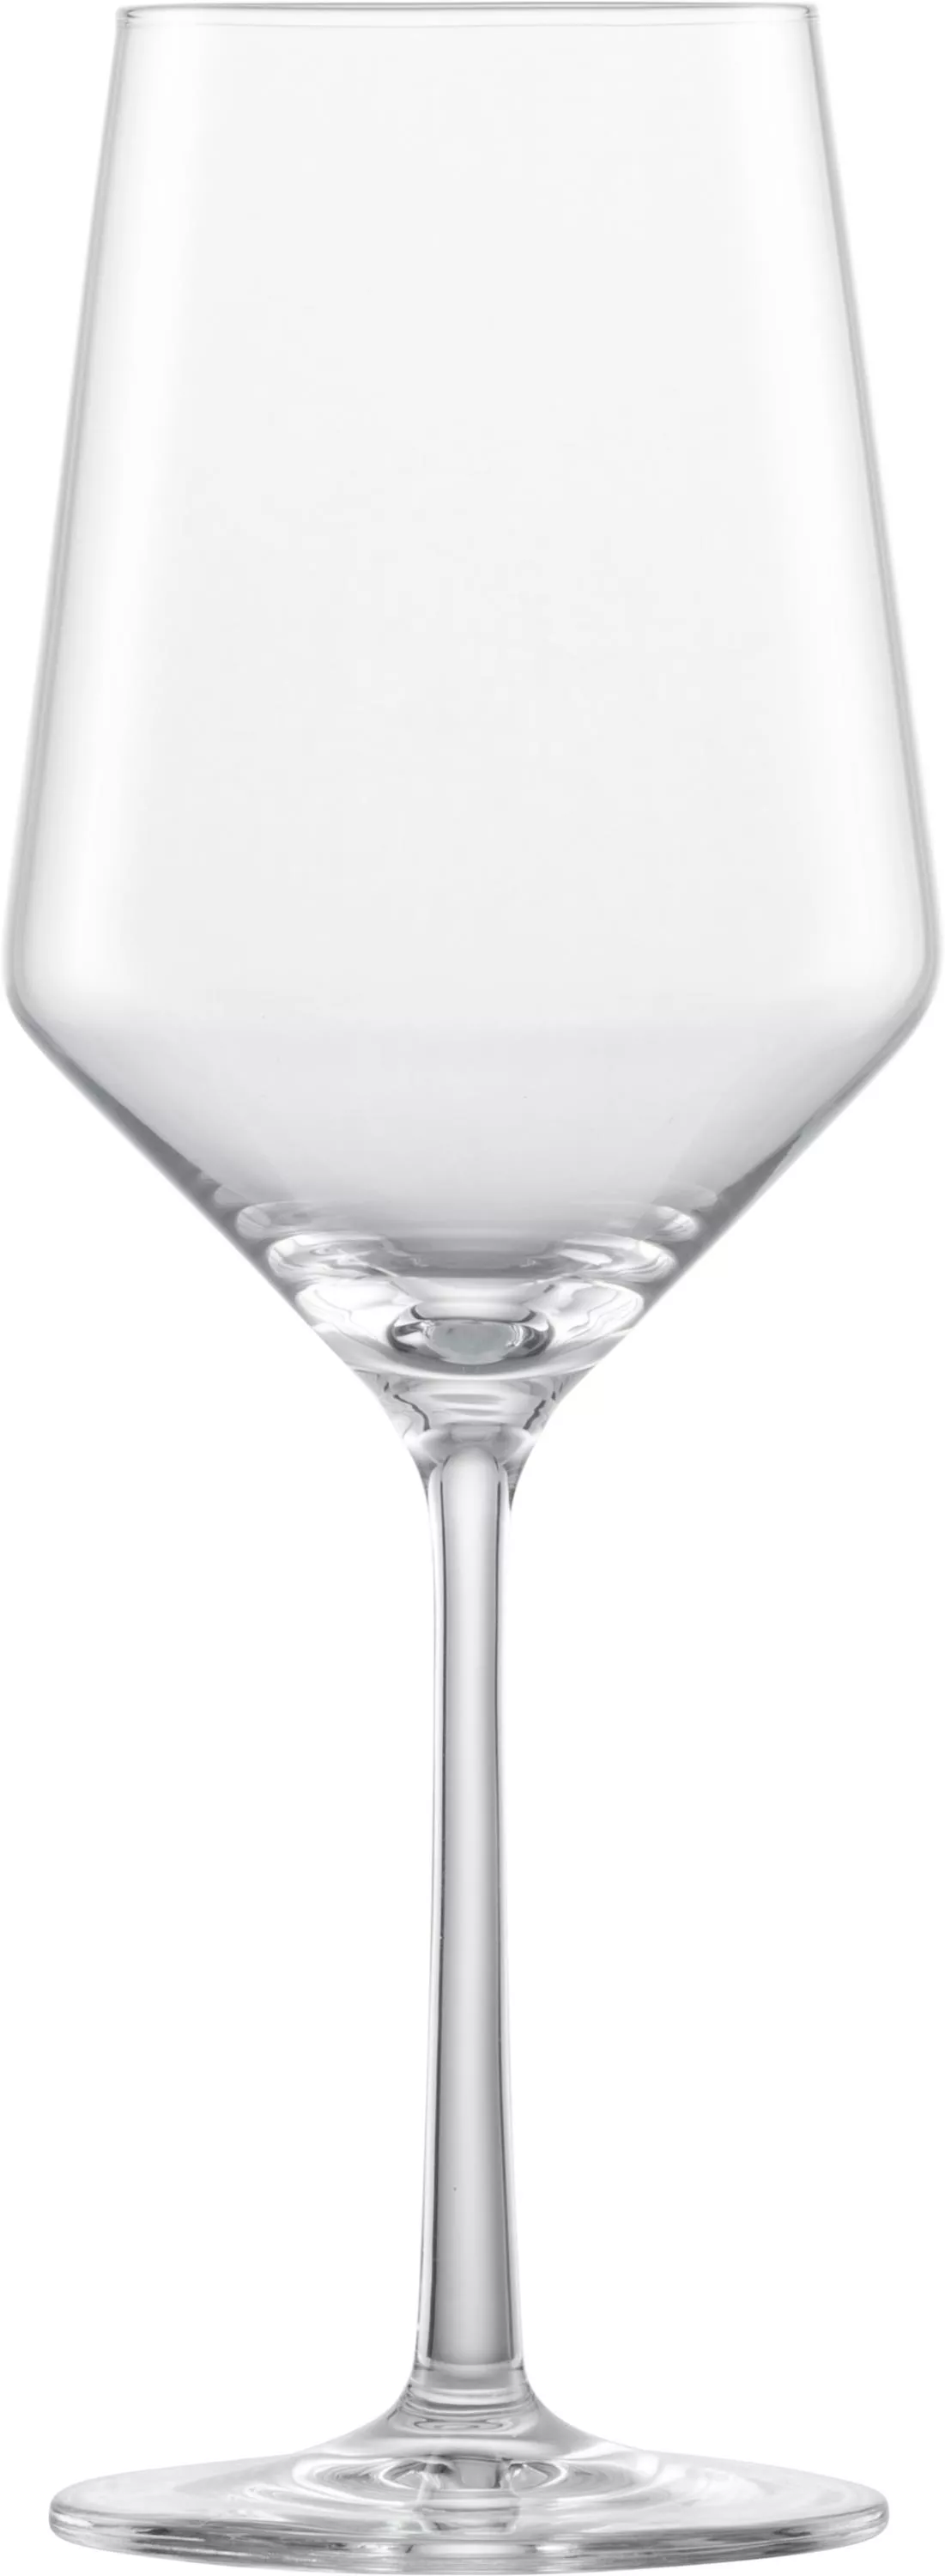 BELFESTA Cabernet Rotweinglas 540 ml